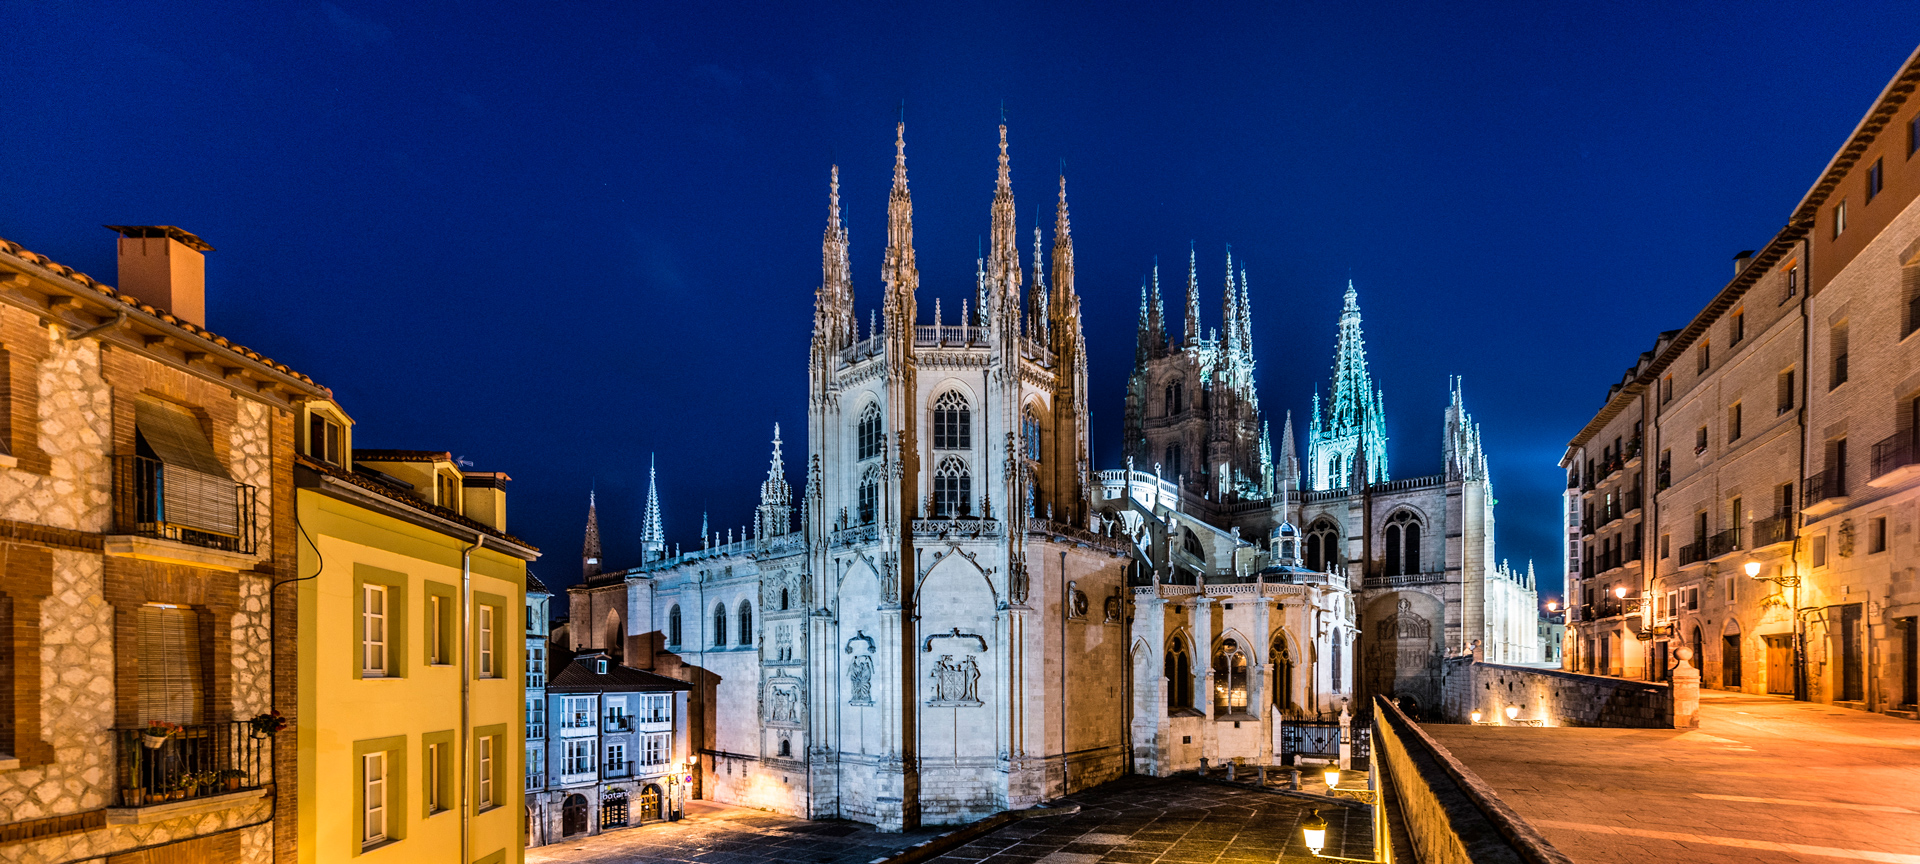 Gotische kathedraal bij nacht, stadsverlichting.